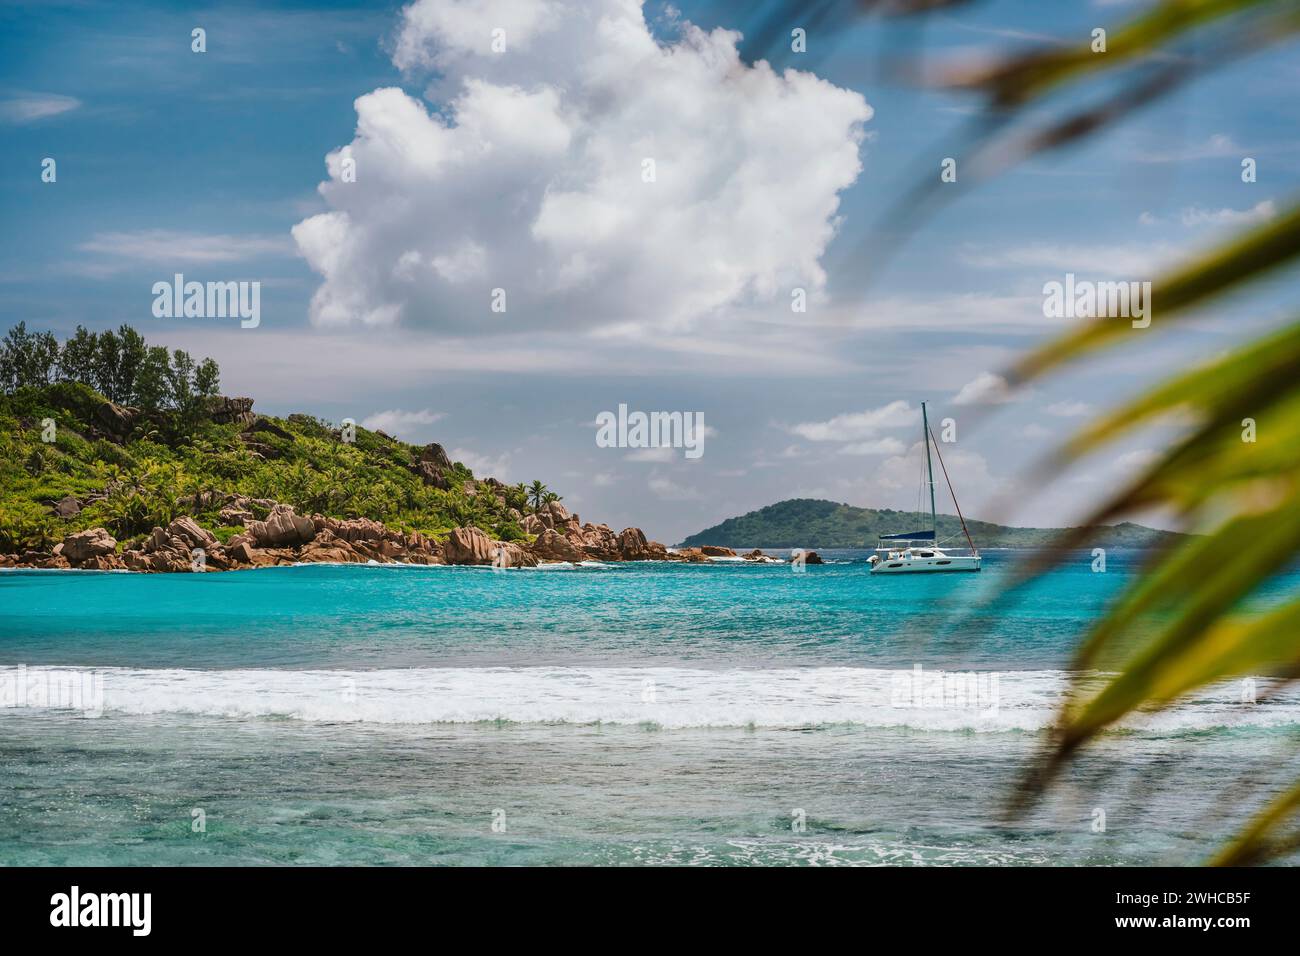 Lagon bleu peu profond, vague de l'océan blanc et bateau de yacht solitaire à la plage d'Anse Cocos, île de la Digue, Seychelles. Destination de voyage de vacances de luxe. Banque D'Images